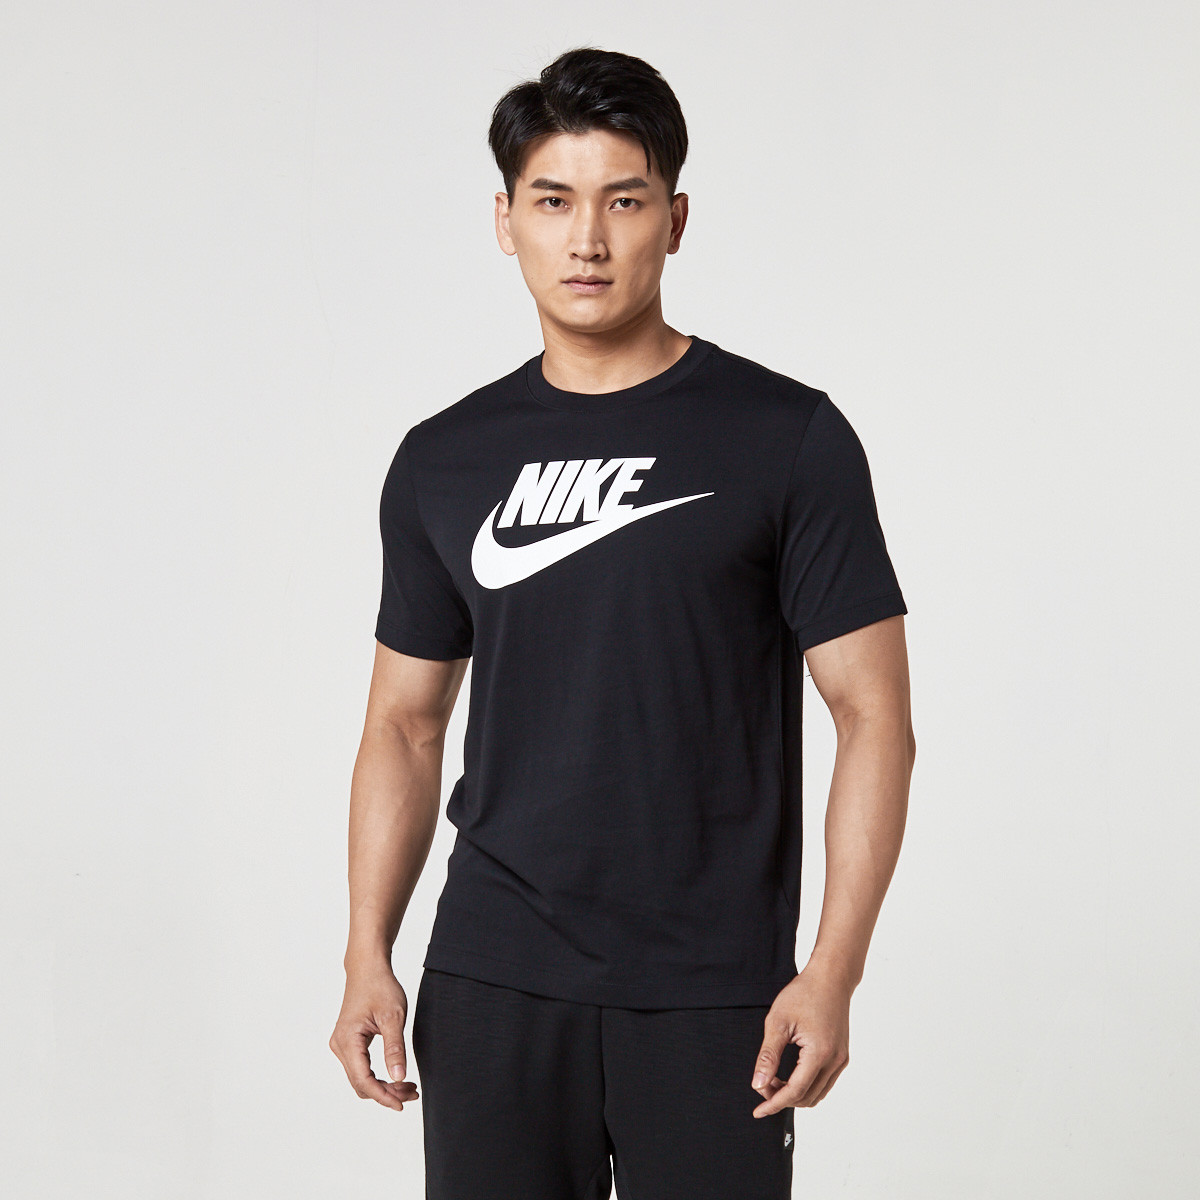 99元包邮 Nike 纯棉印LOGO 男款短袖T恤